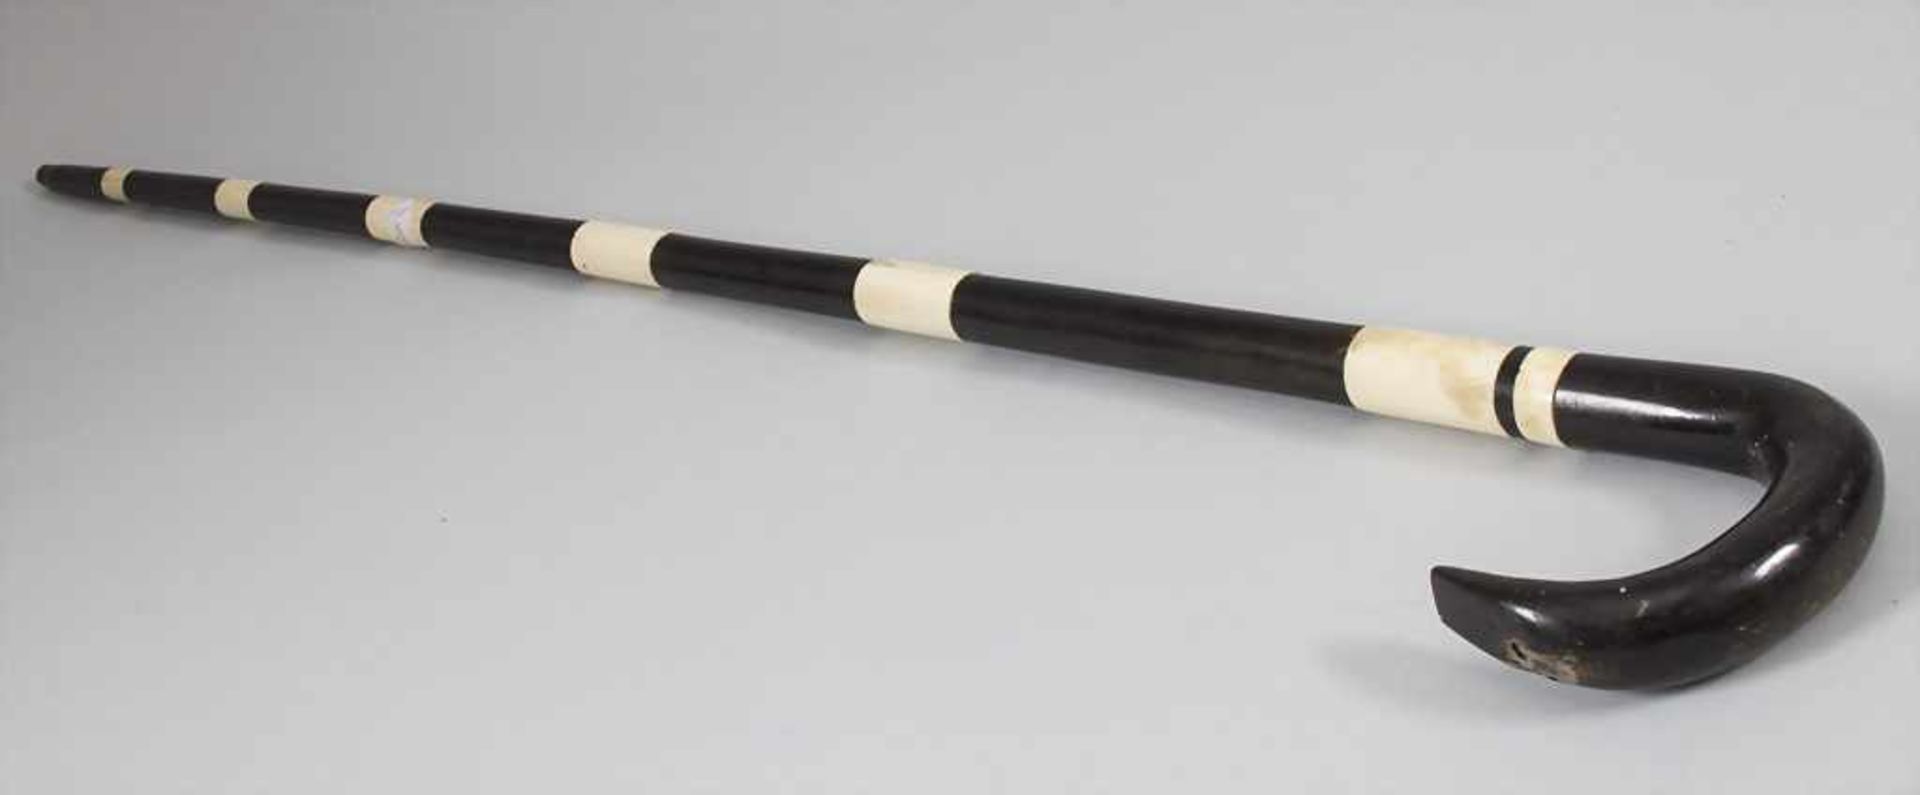 Spazierstock / A walking stick / cane, um 1900 - Bild 3 aus 3